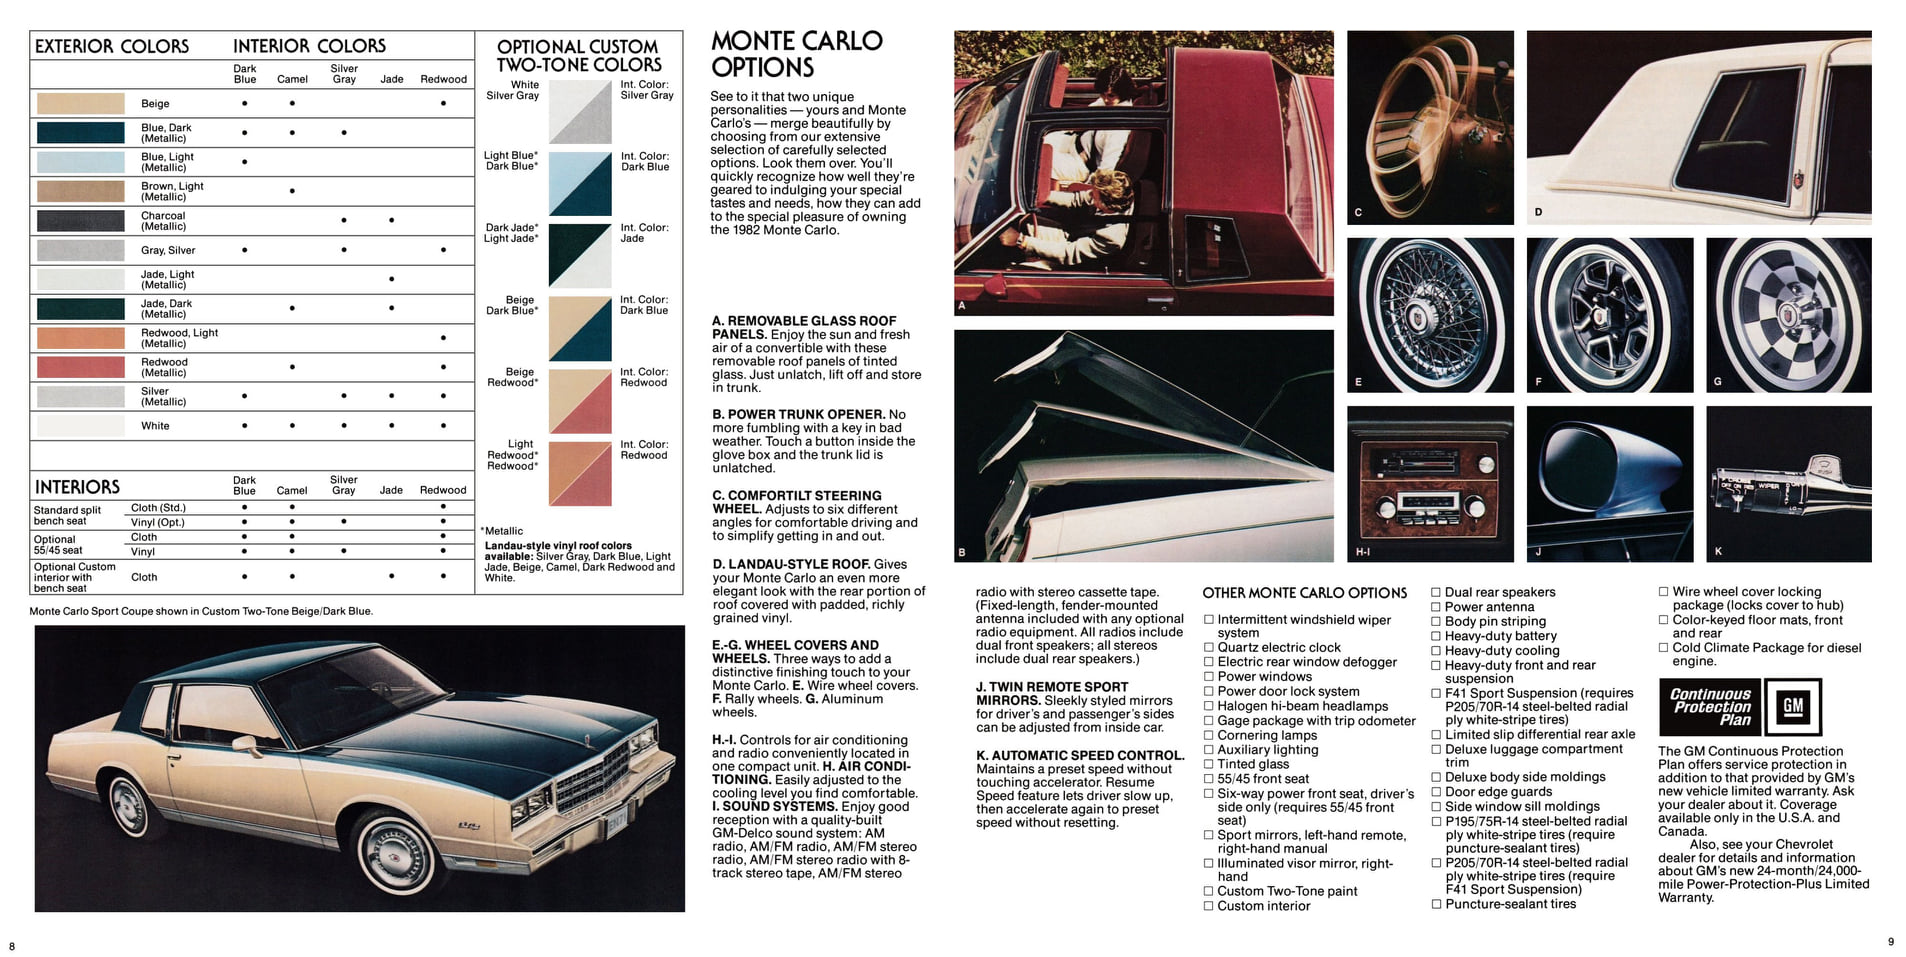 1982 Chevrolet Monte Carlo Brochure 08-09